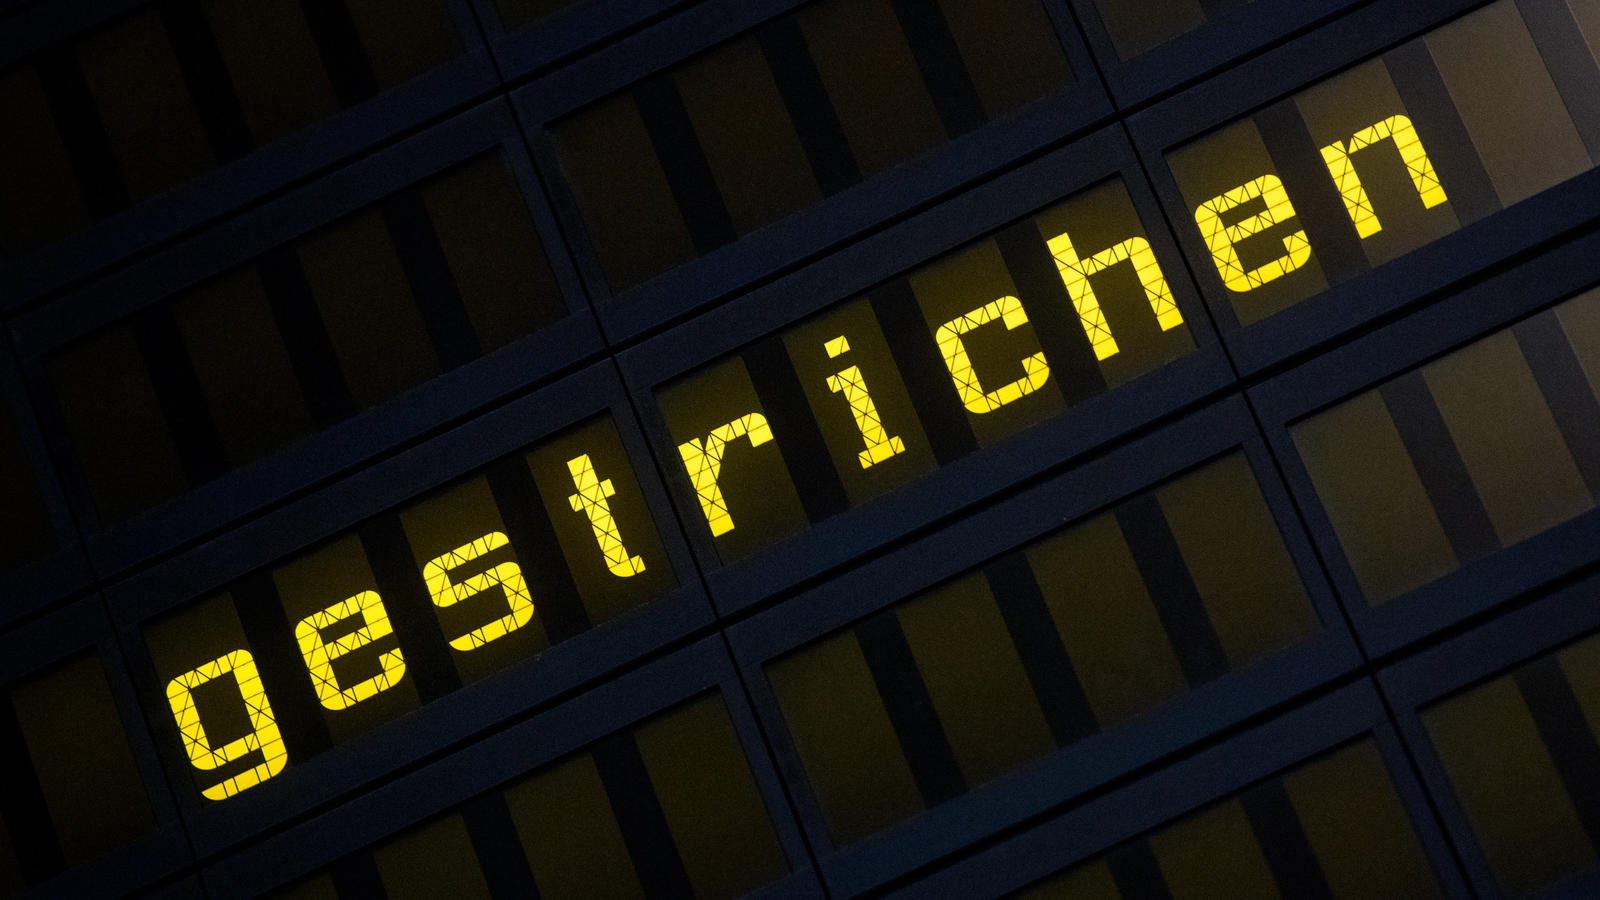 ARCHIV - Das Wort «gestrichen» steht am 06.10.2016 auf einer Anzeigetafel am Flughafen in Hannover (Niedersachsen). Bei Air Berlin fehlen derzeit Maschinen und fliegendes Personal. Deshalb mussten auch am Samstag wieder Flüge annulliert werden. (zu d